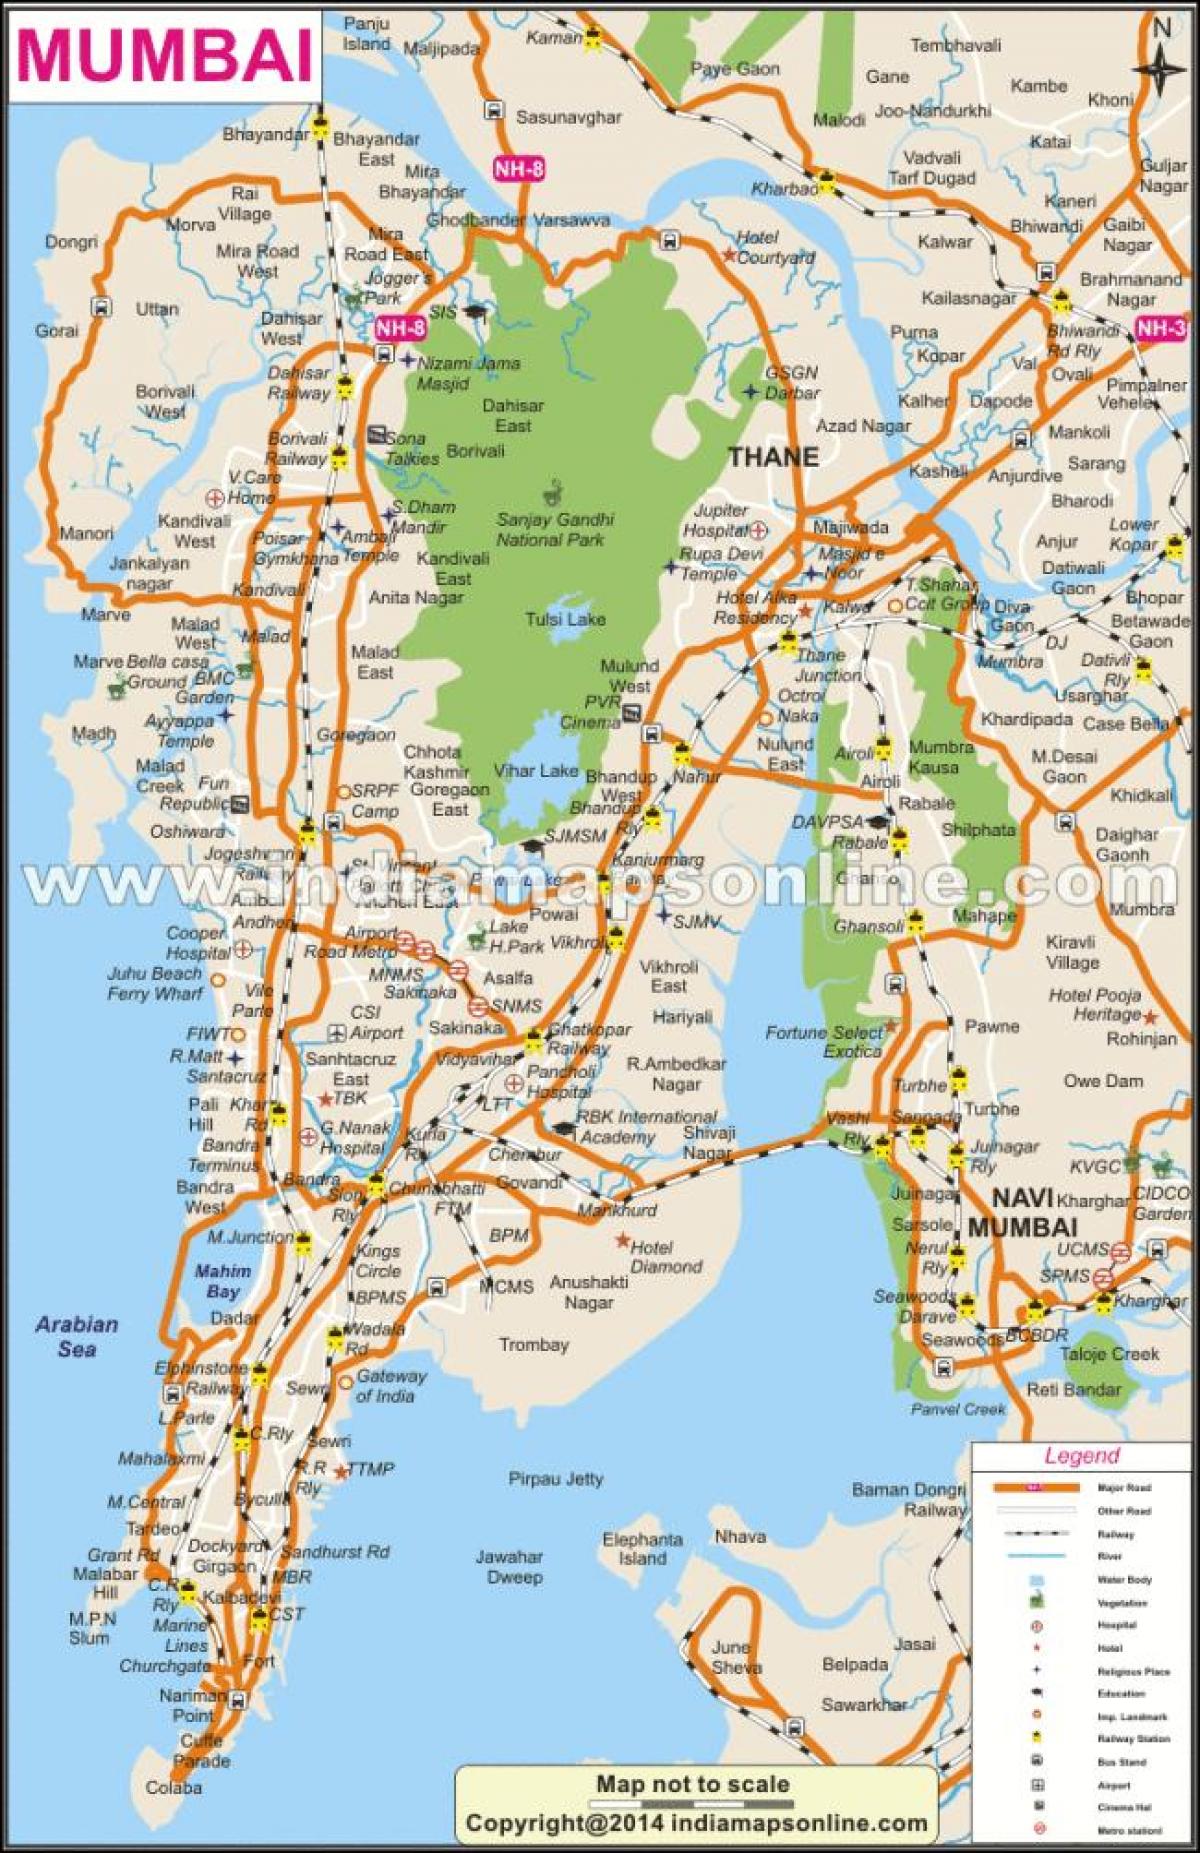 Mumbai në hartë